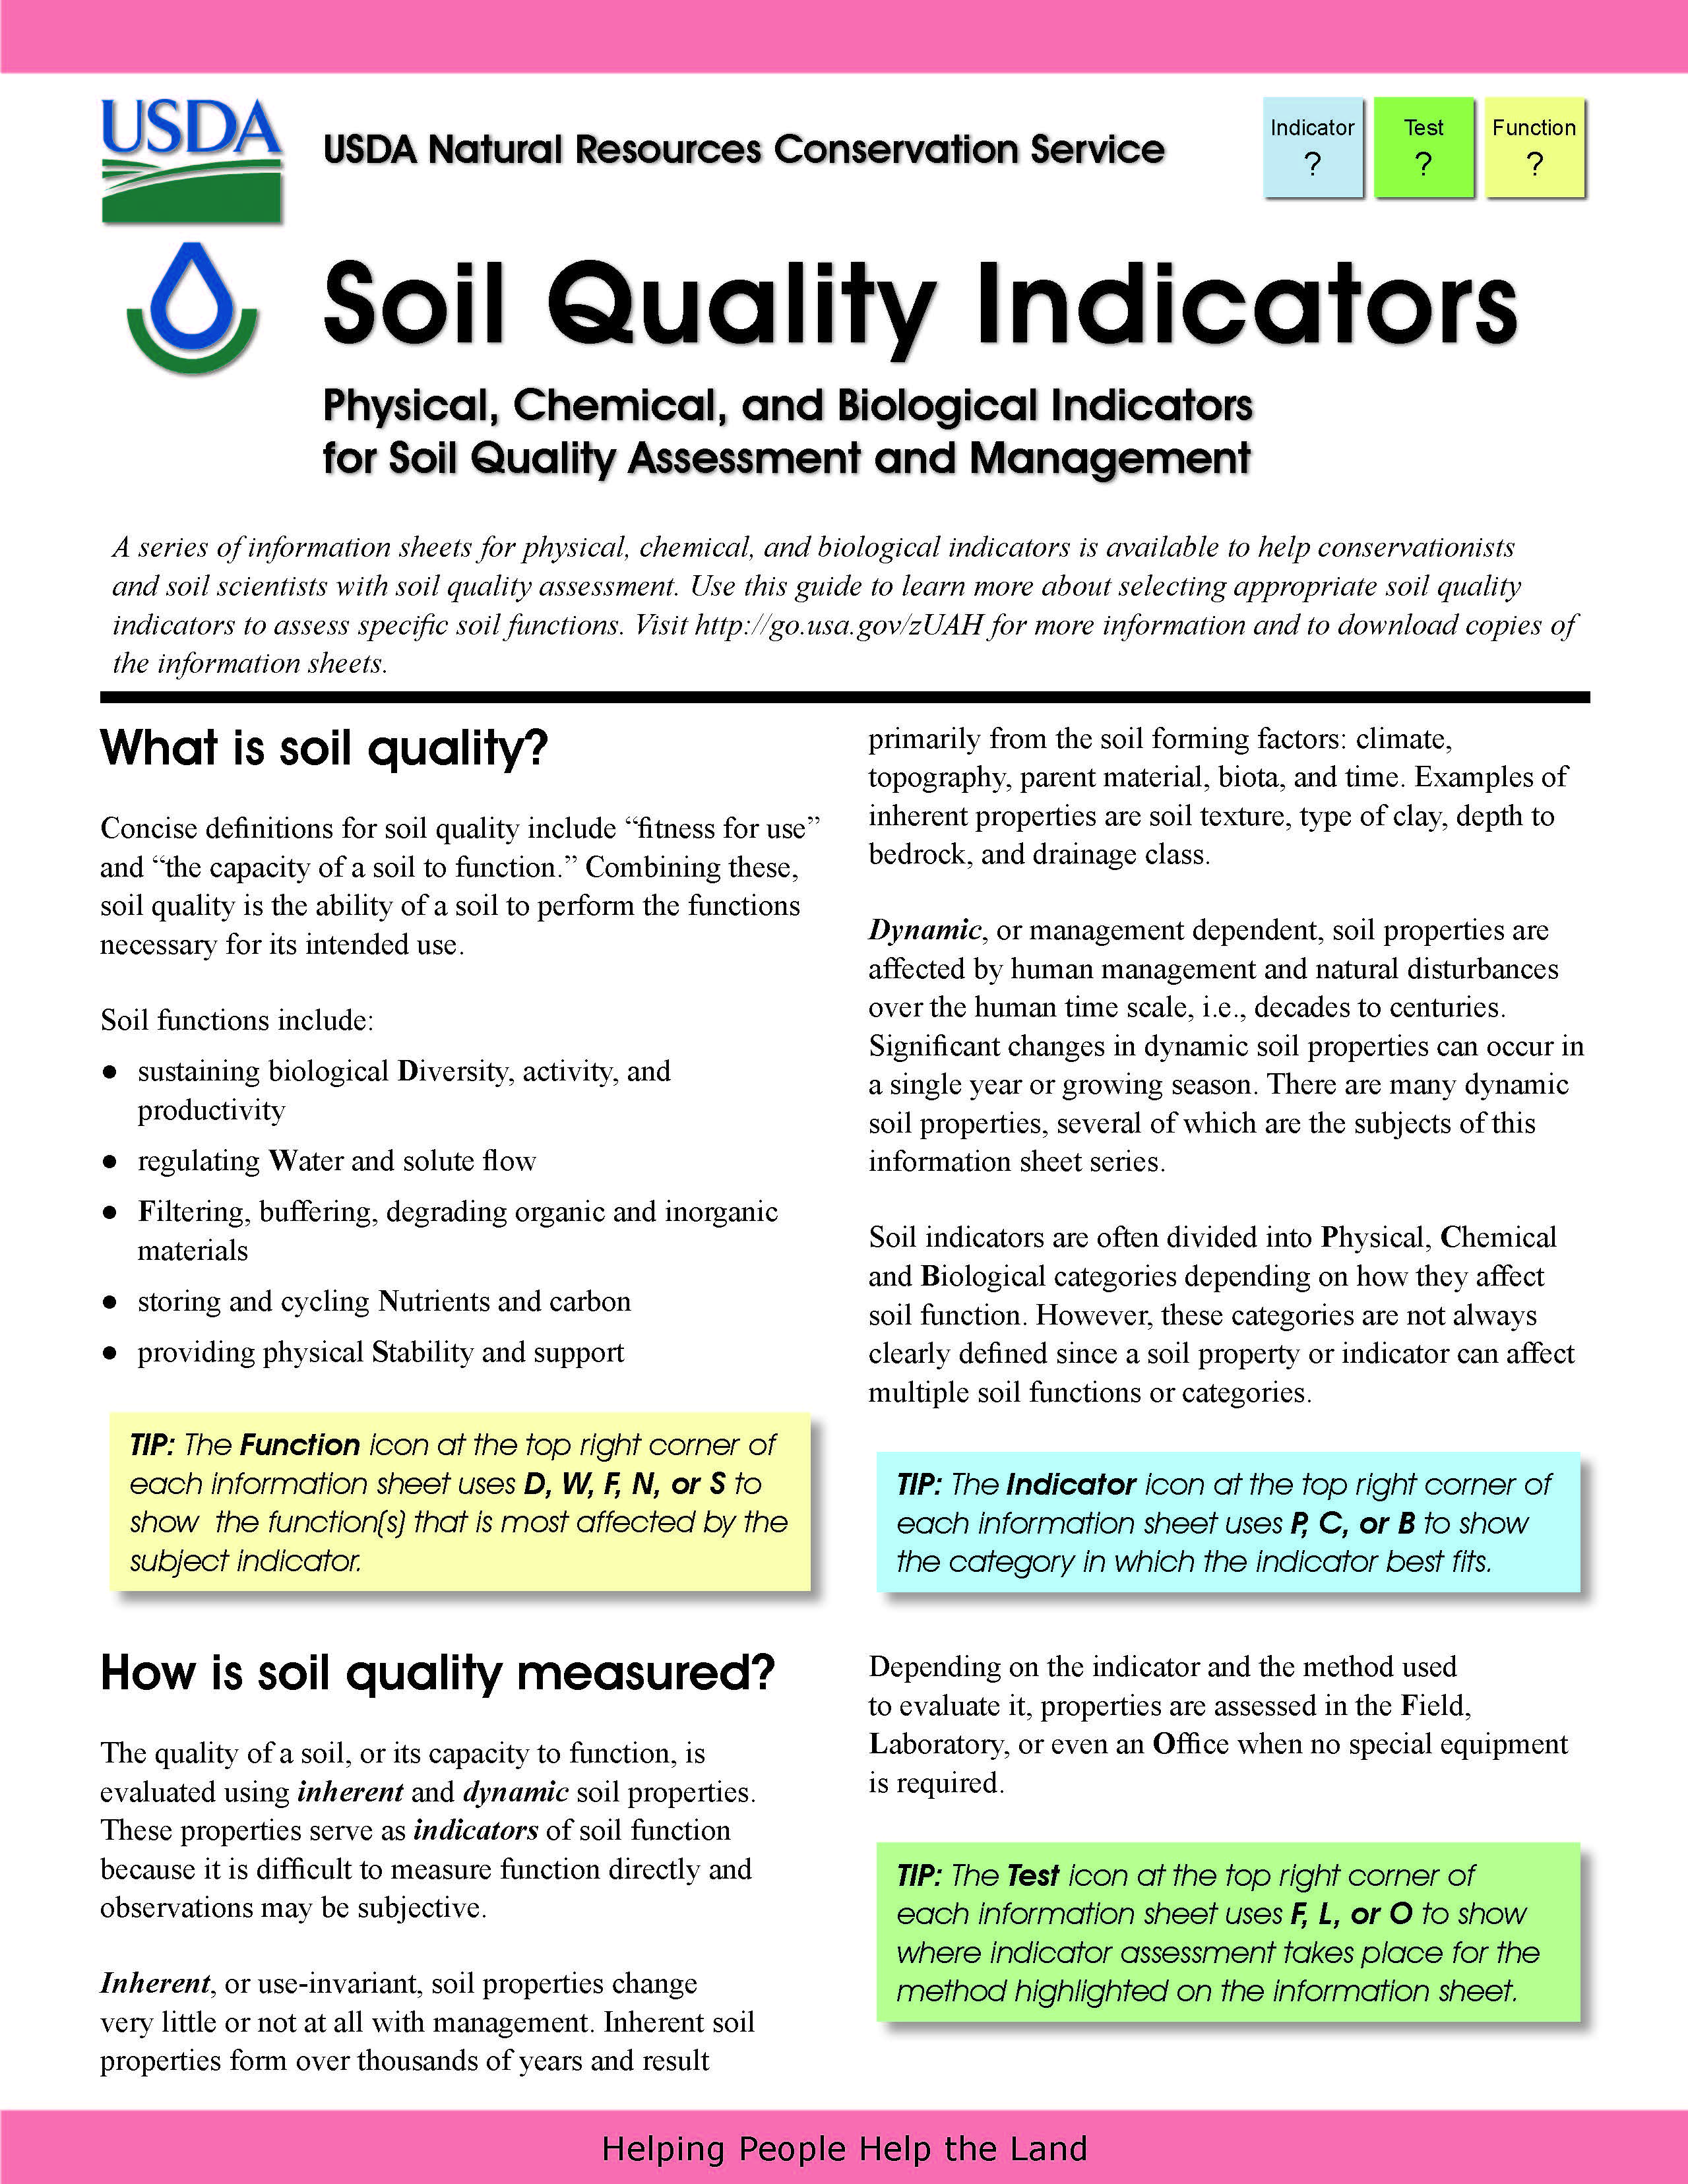 SQ-Indicators-Soil Quality